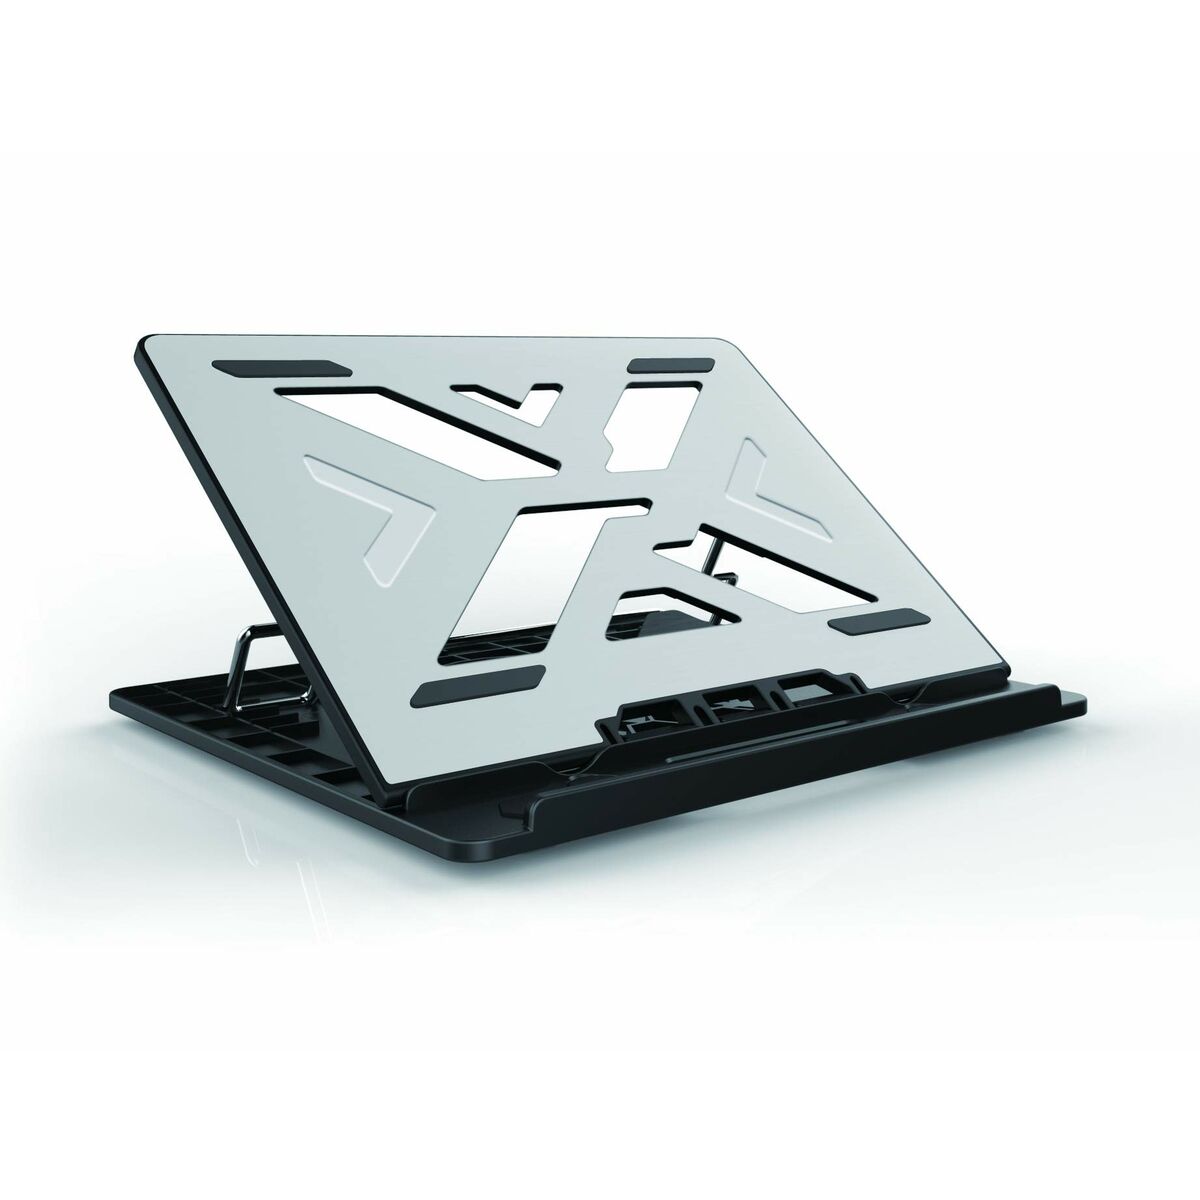 Support pour Ordinateur Portable Conceptronic THANA ERGO S, Laptop Cooling Stand Gris